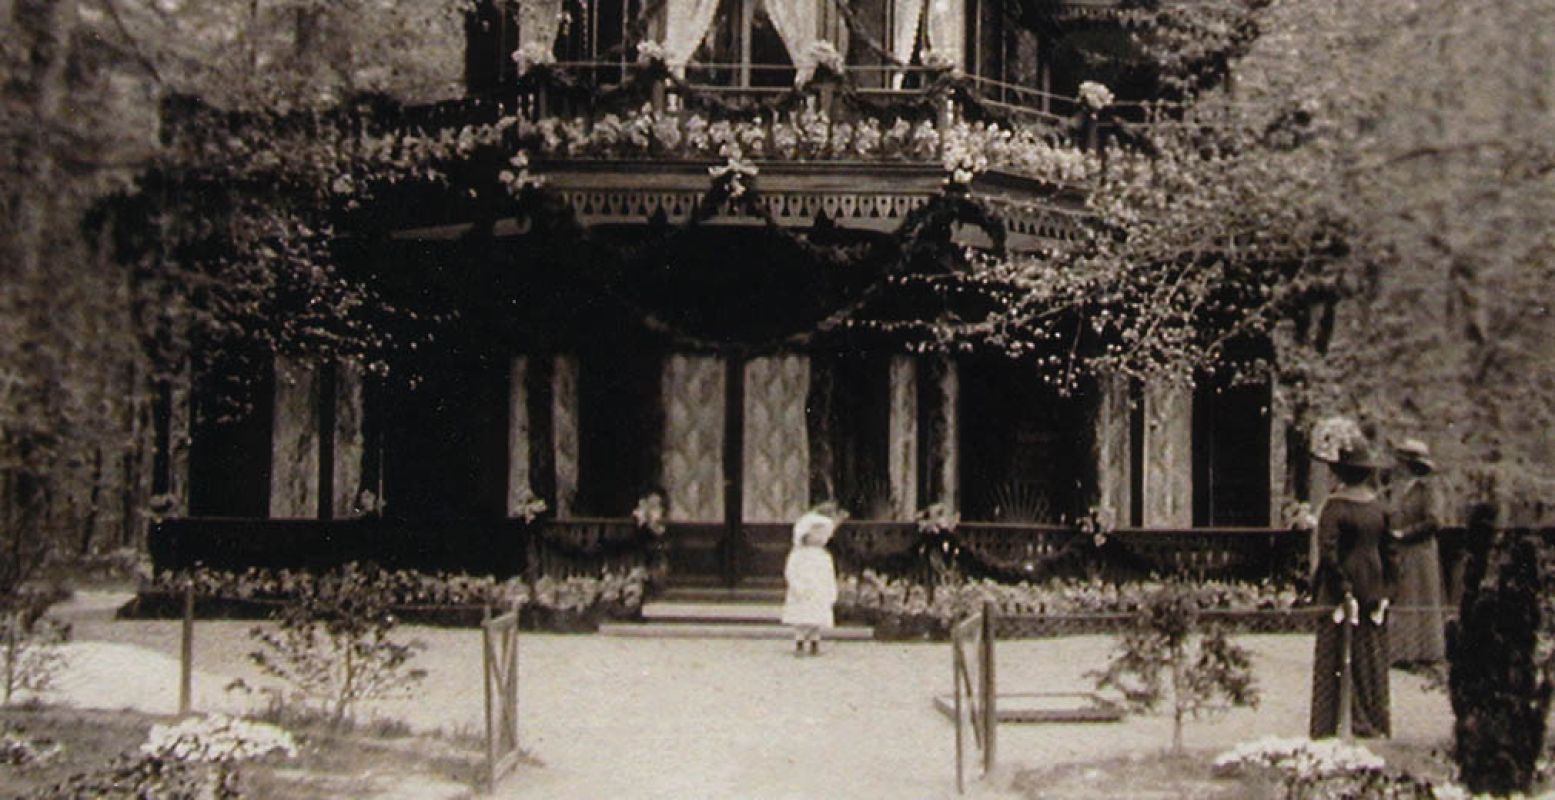 Foto: Prinses Juliana bij het chalet, 1912, fotograaf onbekend, collectie Koninklijke Verzamelingen, Den Haag.